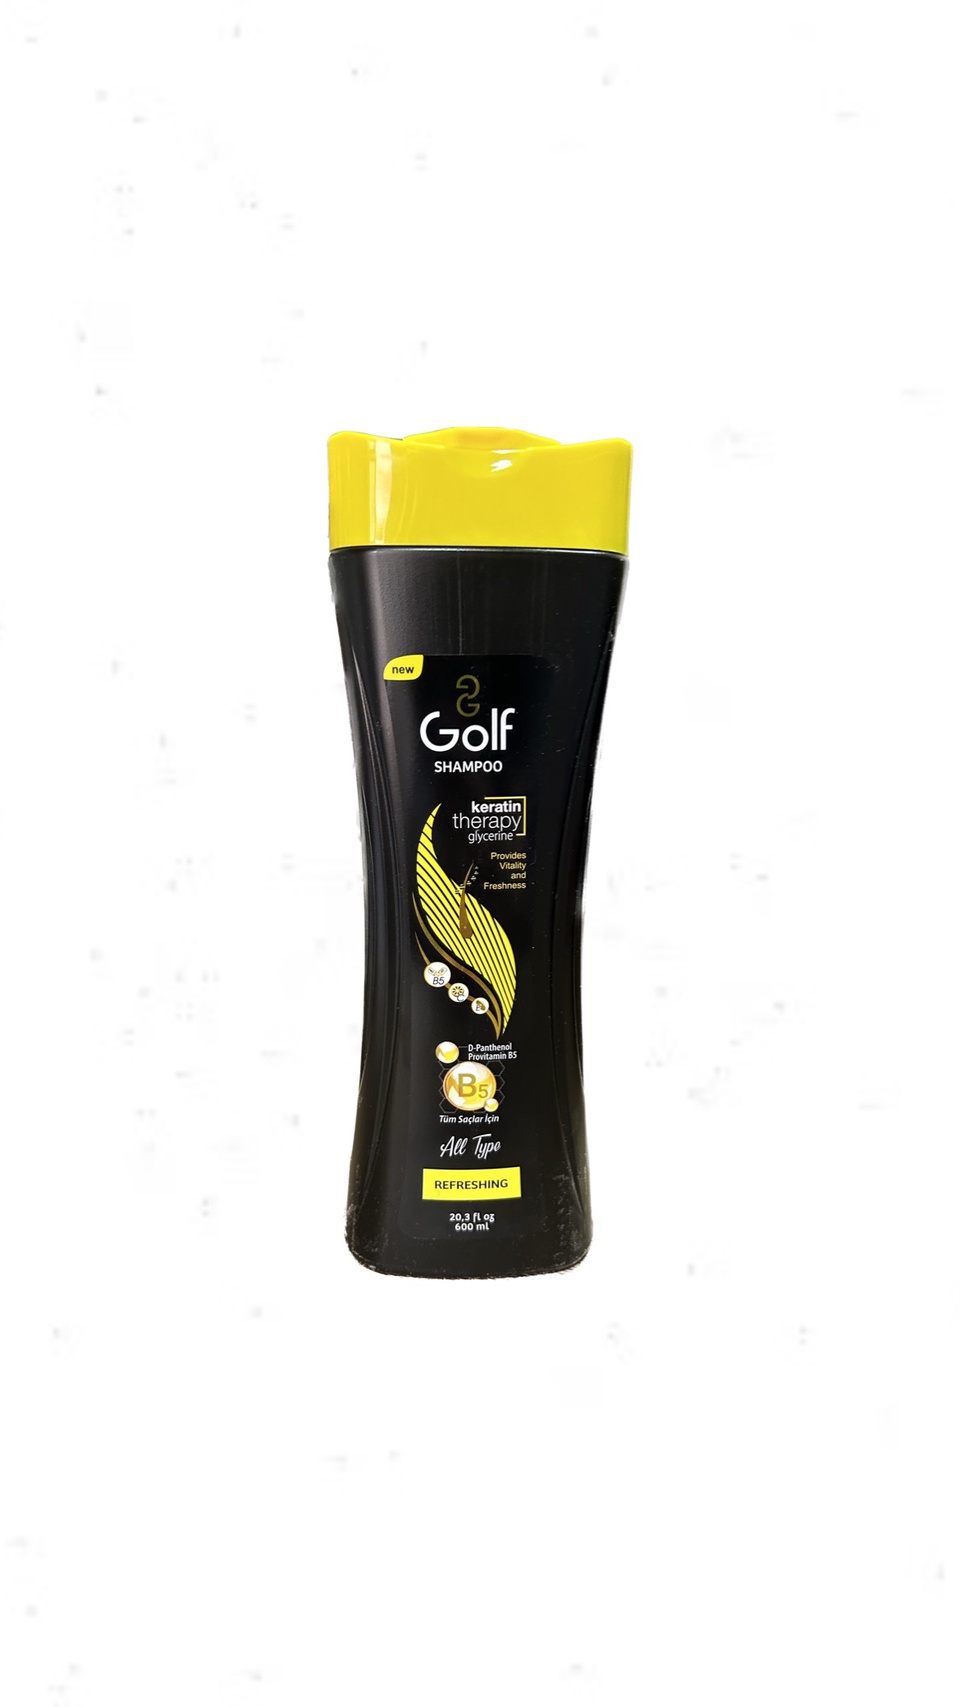 Шампунь Golf Refreshing для всех типов волос ,600 мл - 250 ₽, заказать онлайн.